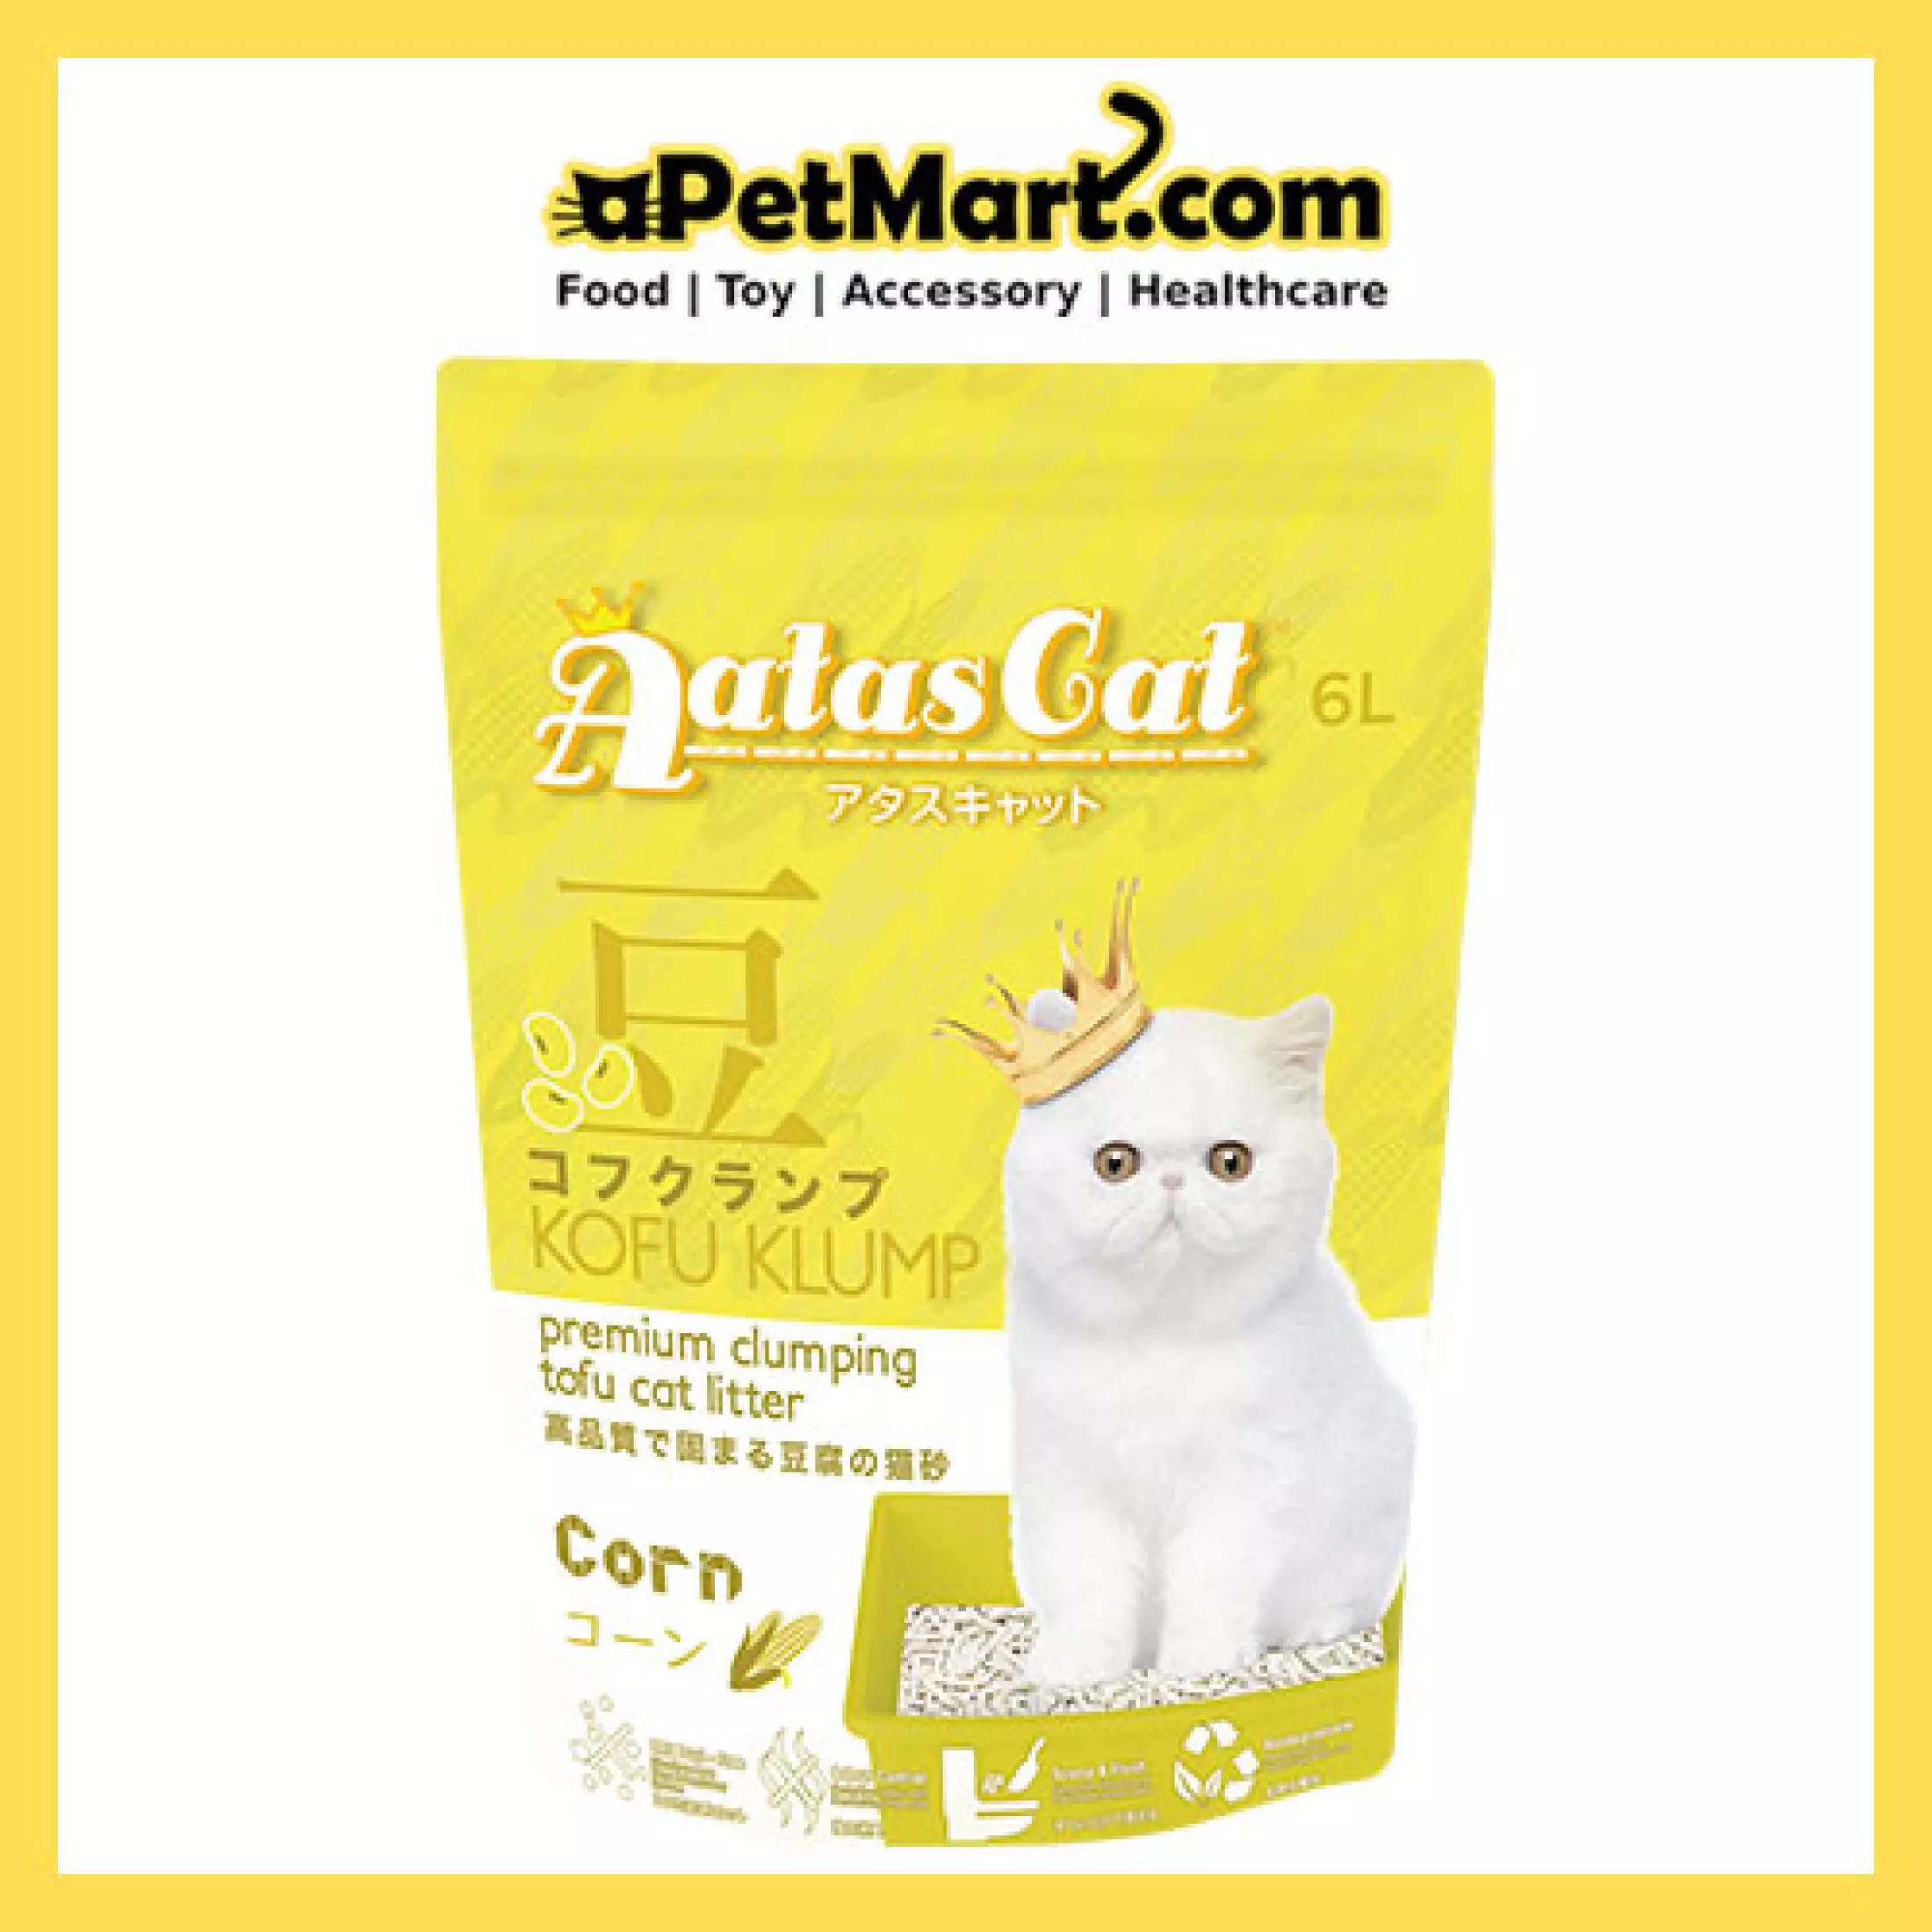 4 Packs Aatas Cat Kofu Klump Tofu Cat Litter 6l X 4 Packs Corn Lazada Singapore